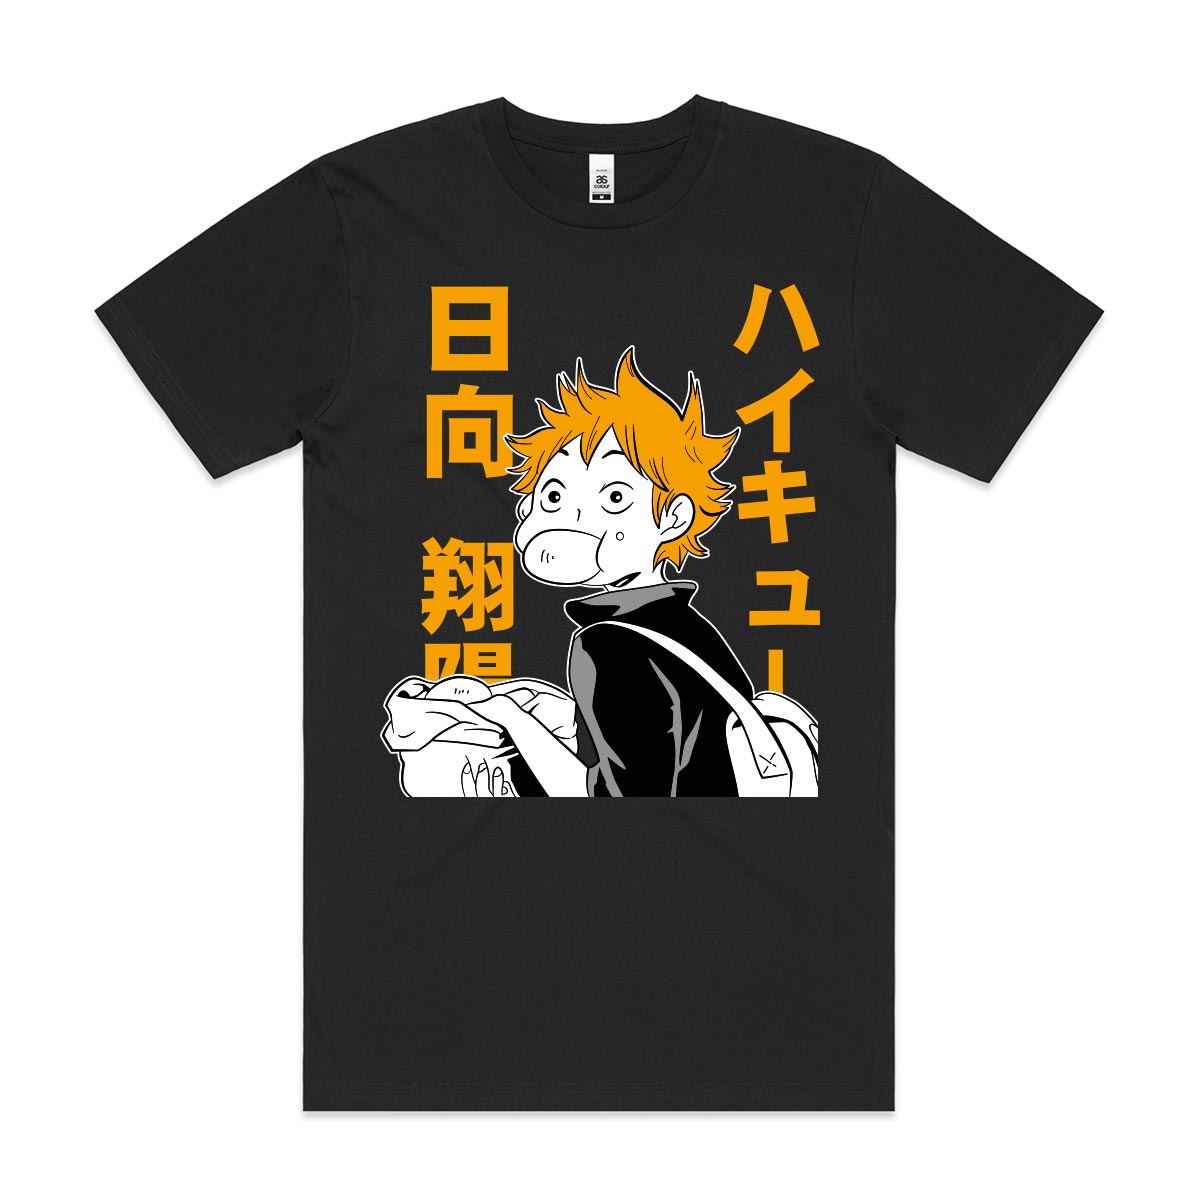 Haikyuu!! Shoyo Hinata V2 T-Shirt Japanese Anime Tee